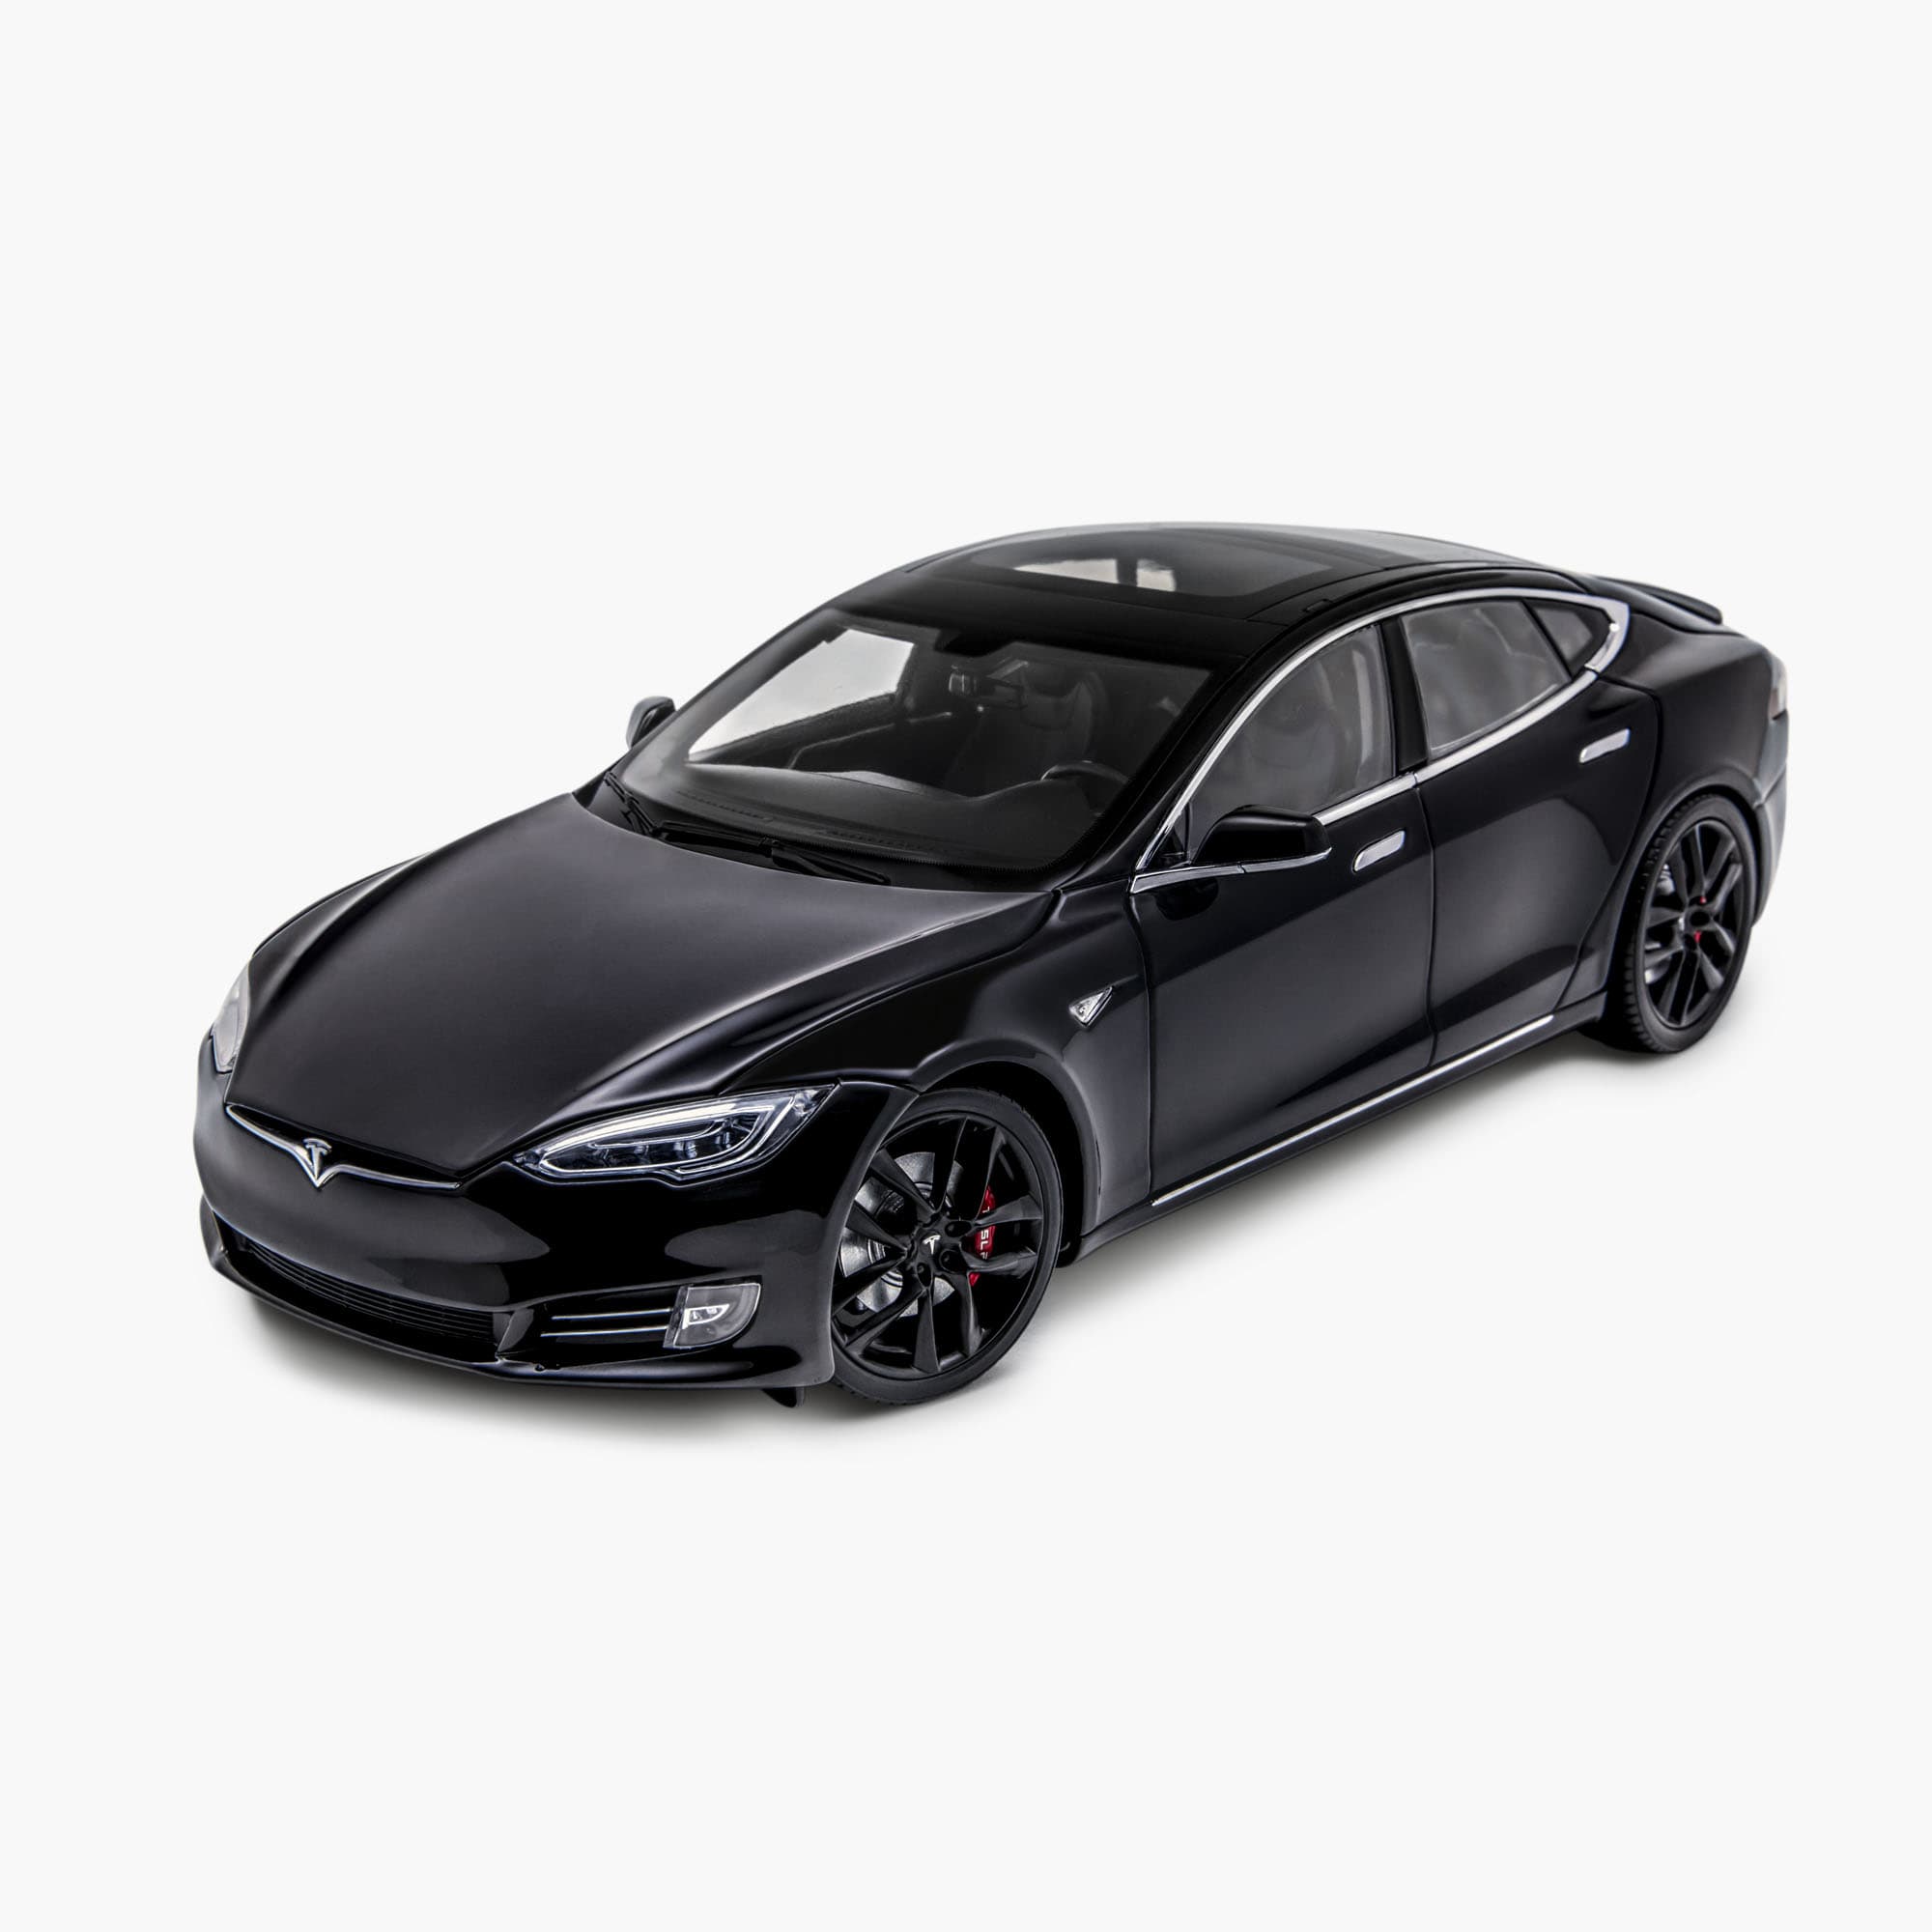 Model S in scala 1:18 realizzata in pressofusione